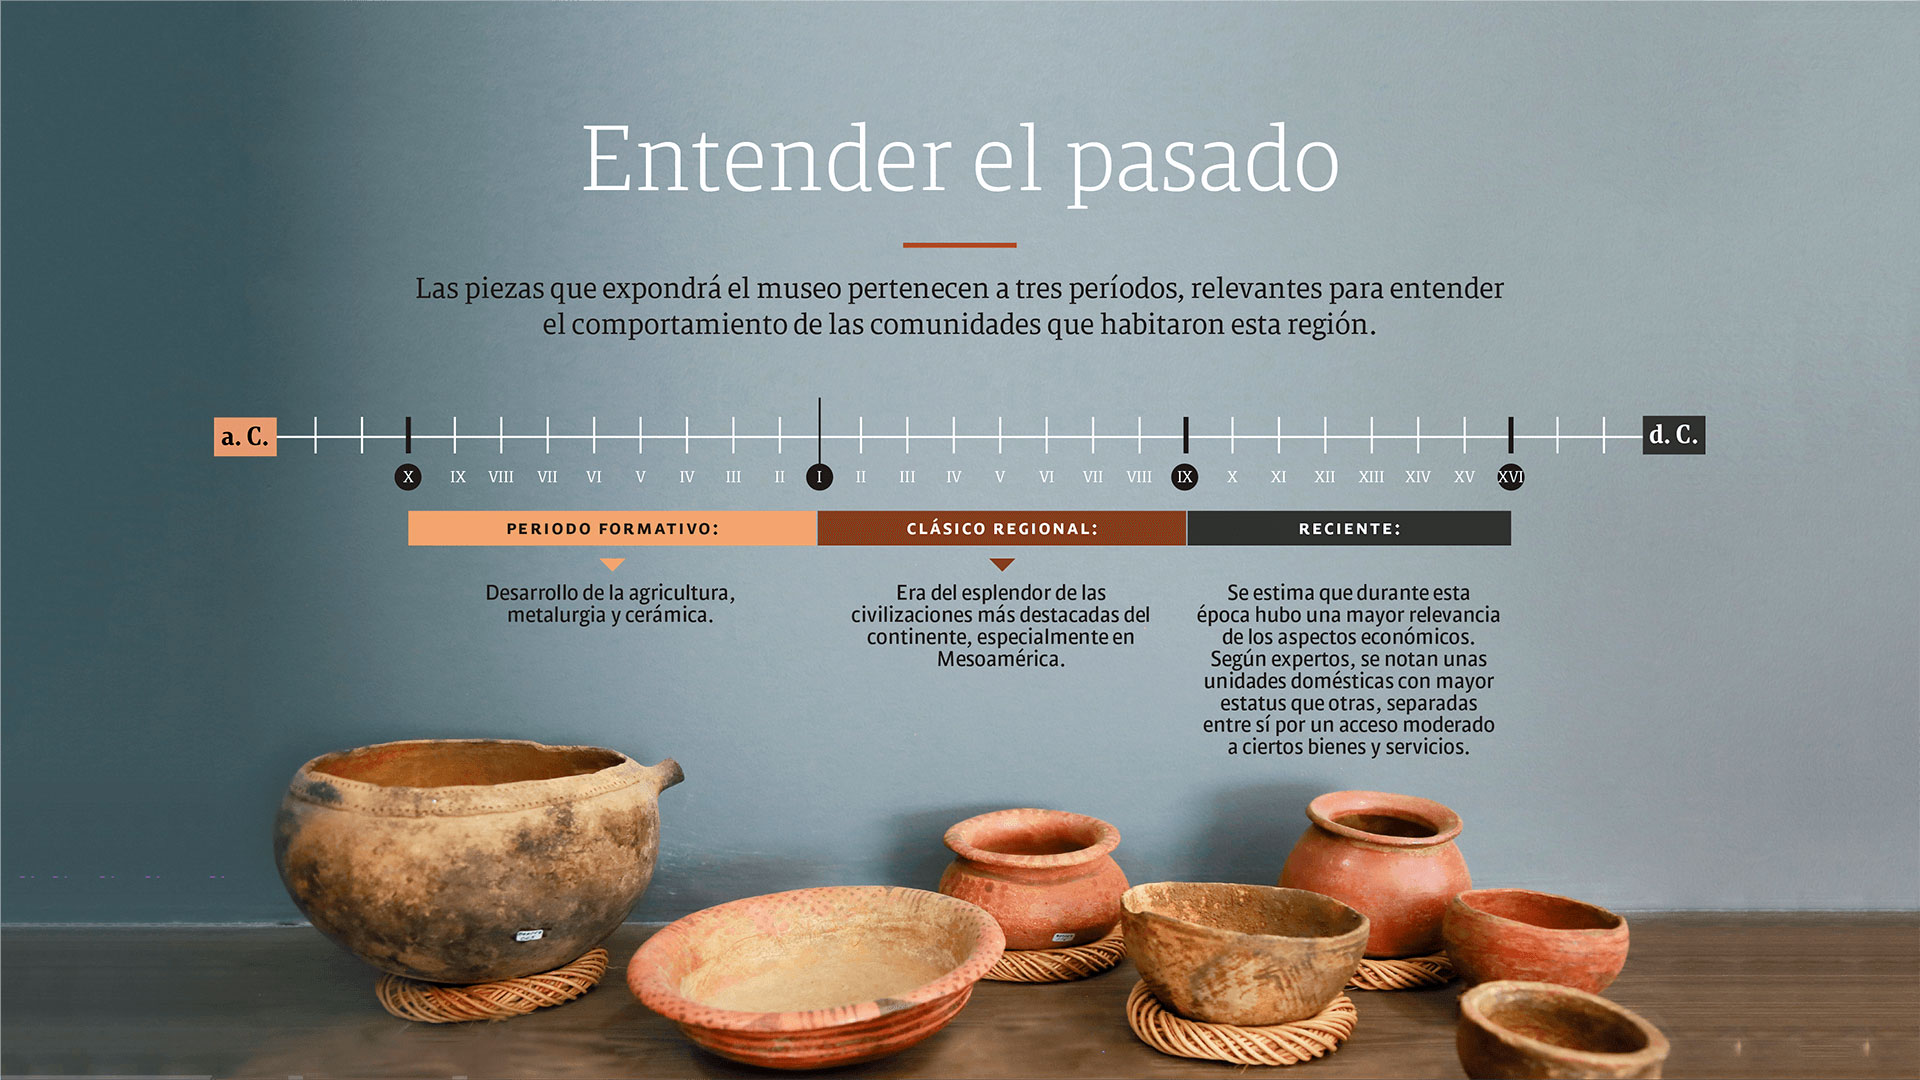 Turismo: el nuevo museo arqueológico que se abrirá en Neiva, Huila